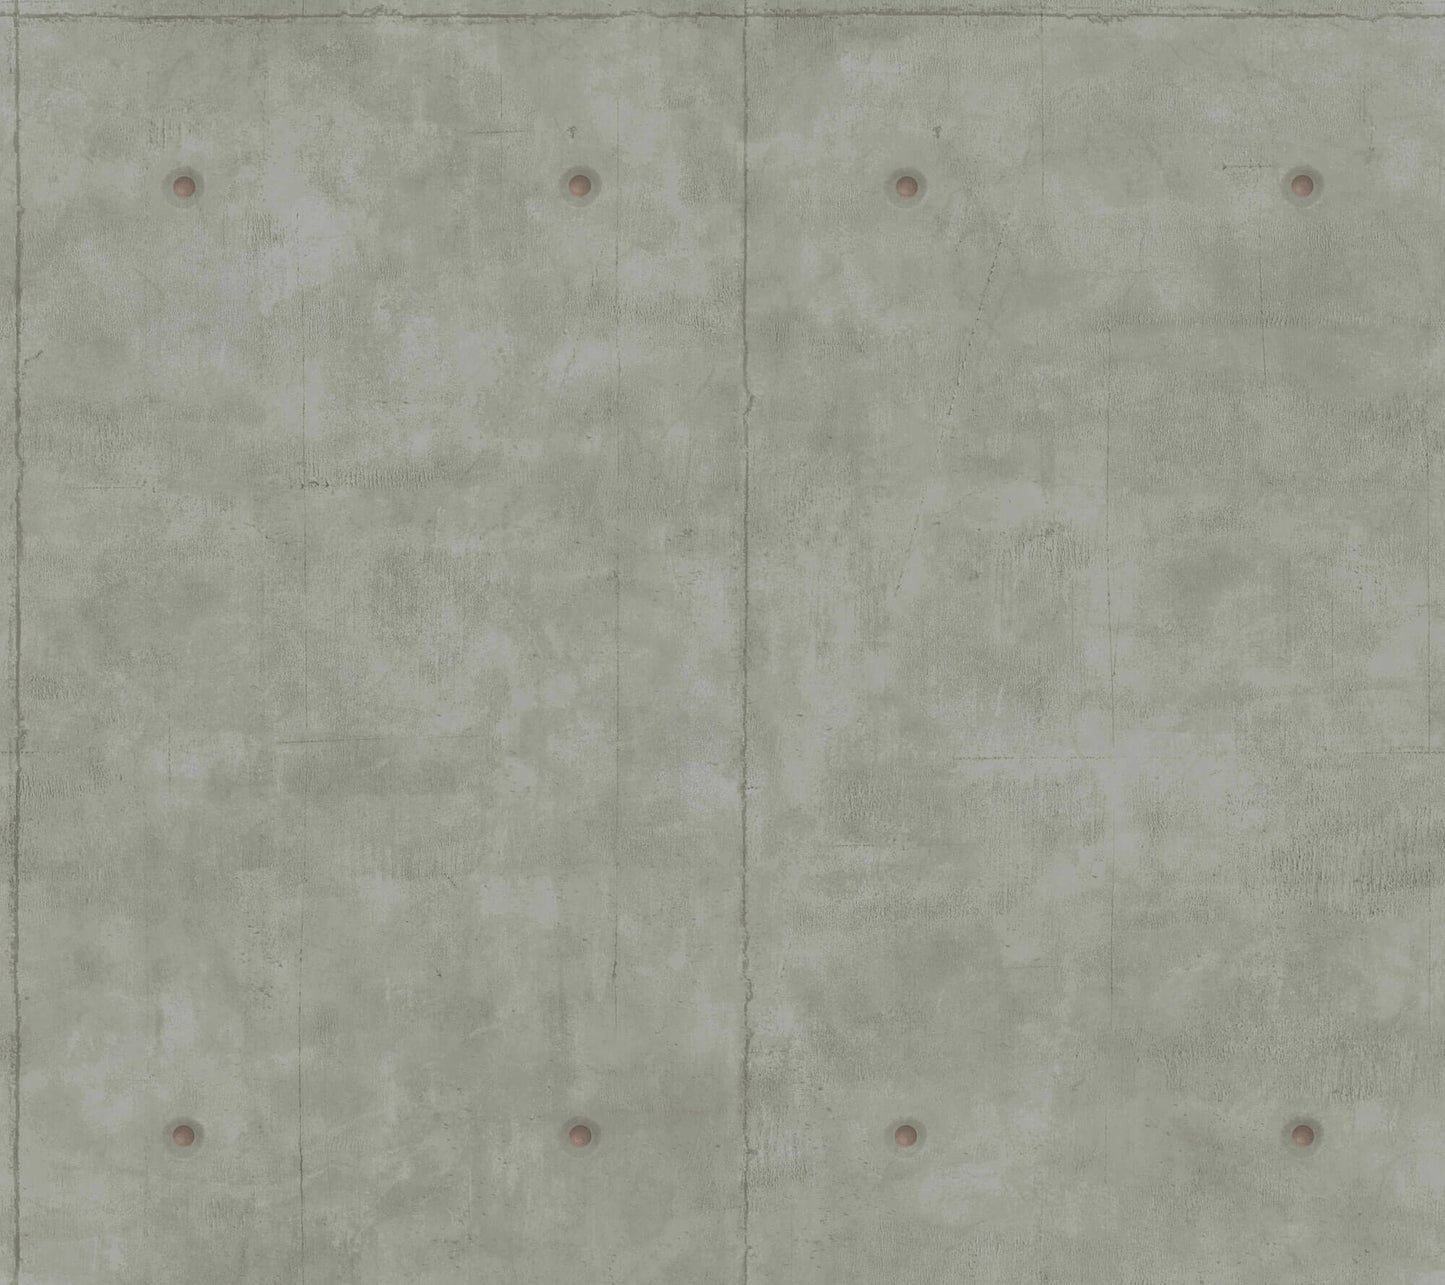 MH1553 Magnolia Home Concrete Wallpaper Dark Gray